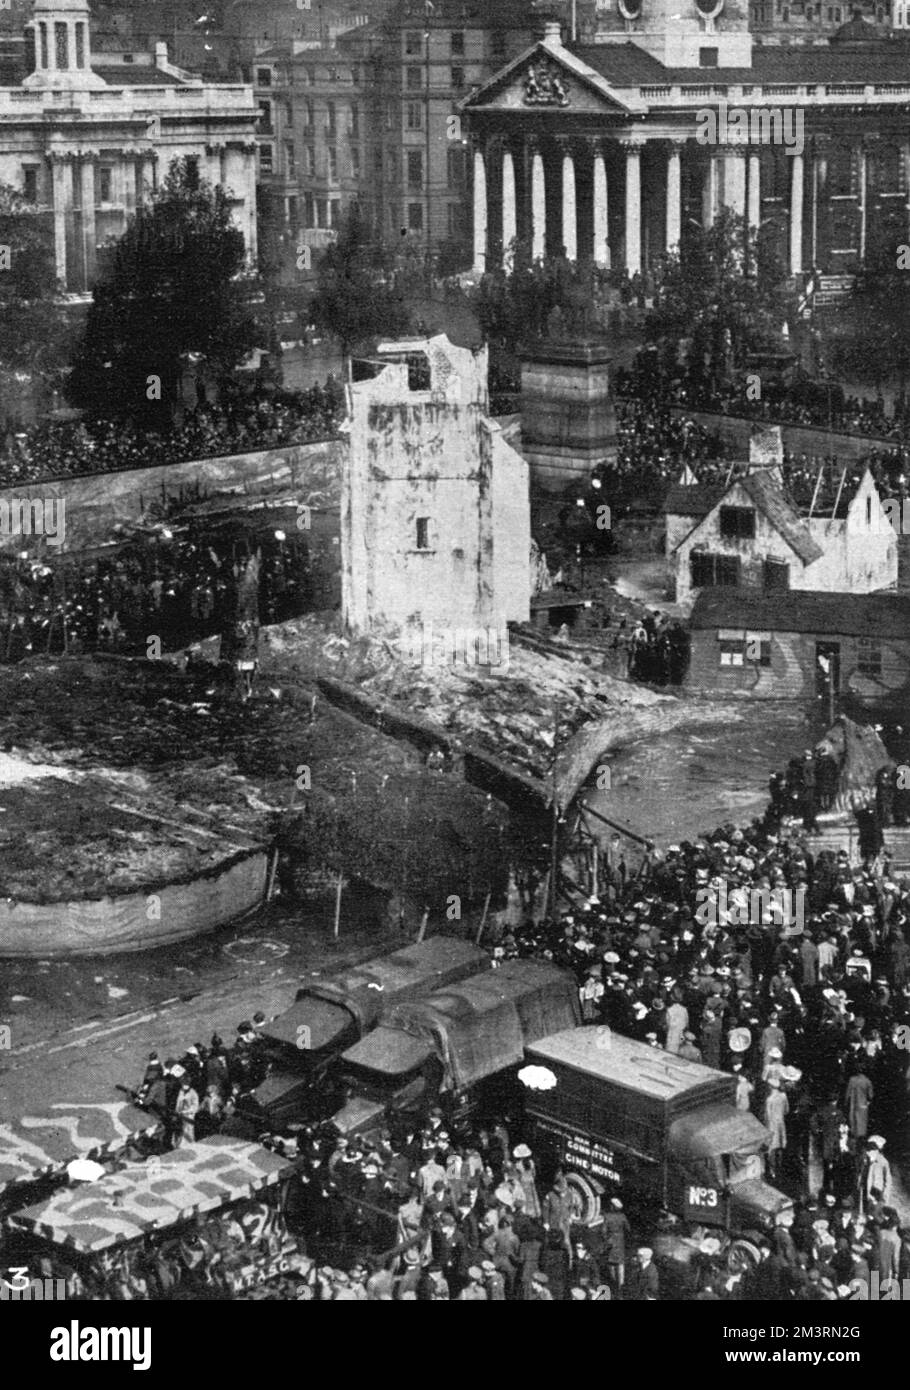 Trafalgar Square comme un village épaté. Trafalgar Square, dans le centre de Londres, s'est « désarmé » pour ressembler à un village français déchiré par la guerre lors d'une campagne de collecte de fonds le 7th octobre 1918, intitulée la campagne Feed the Guns, au cours de laquelle 2 500 000 personnes ont été levées. Date: 1918 Banque D'Images